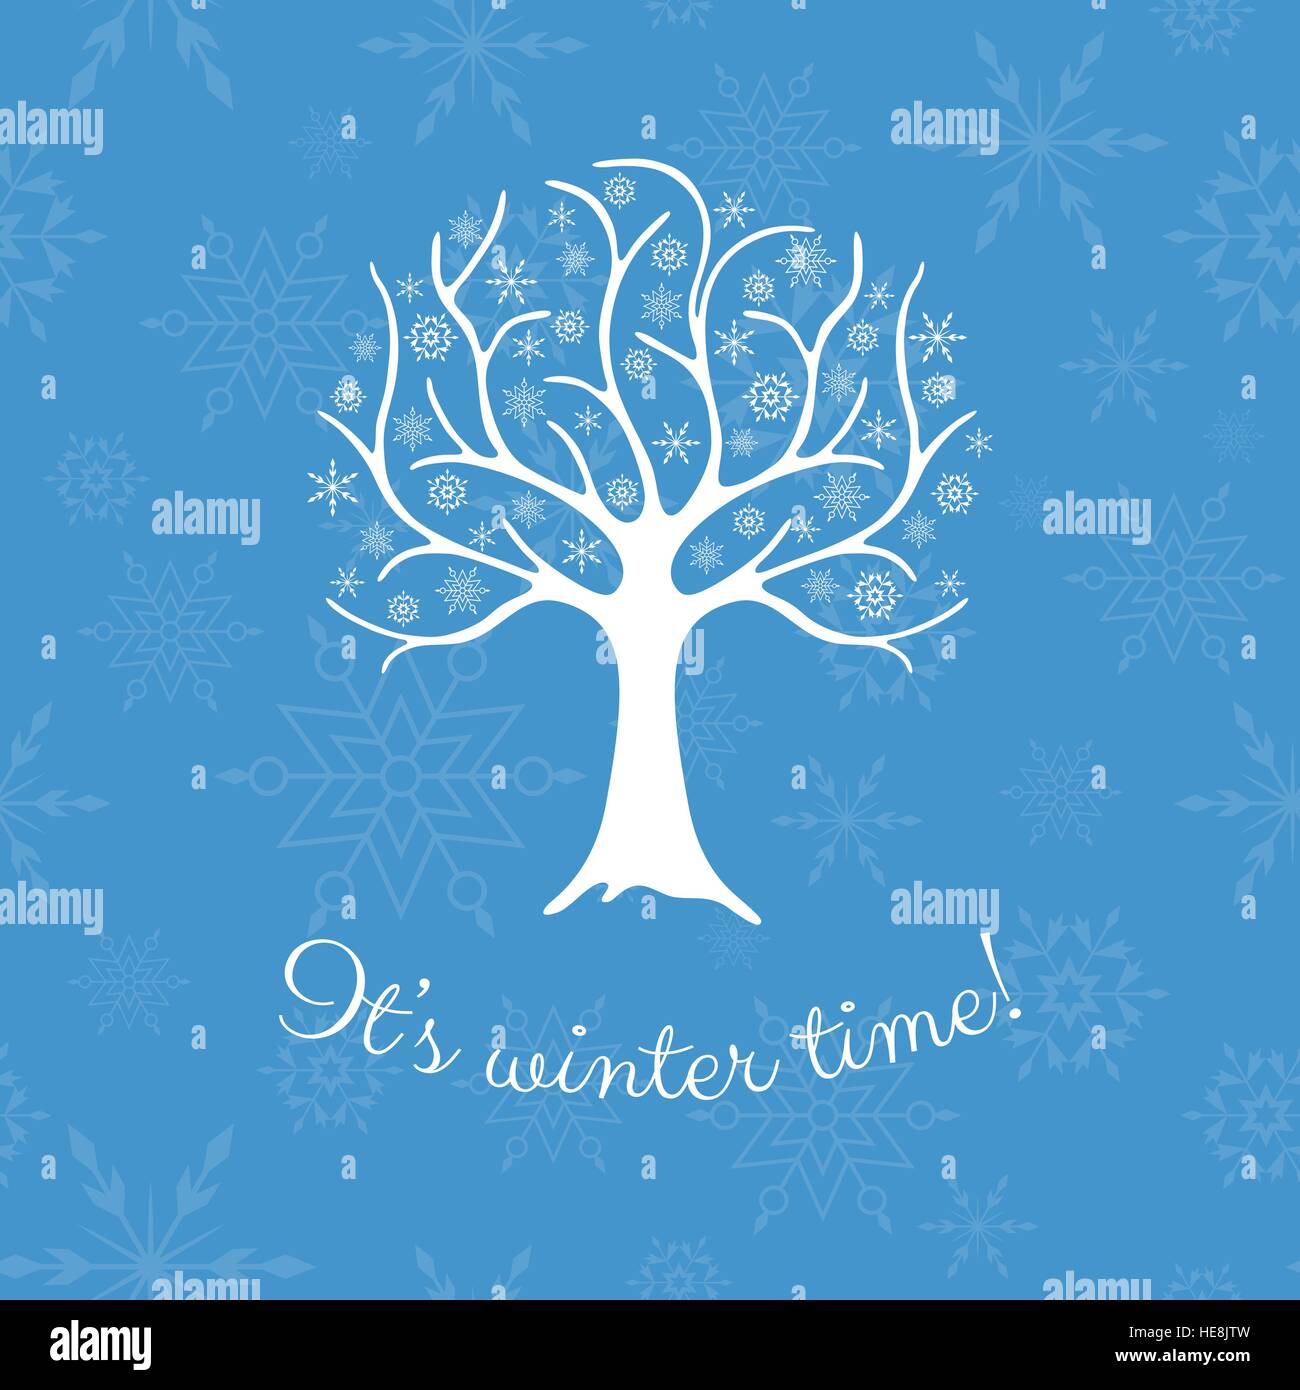 Elegante Winter Baum mit Schneeflocken anstelle von Blättern. Saisonale Entwurfsvorlage über einem Hintergrund mit Schneeflocken. Stock Vektor